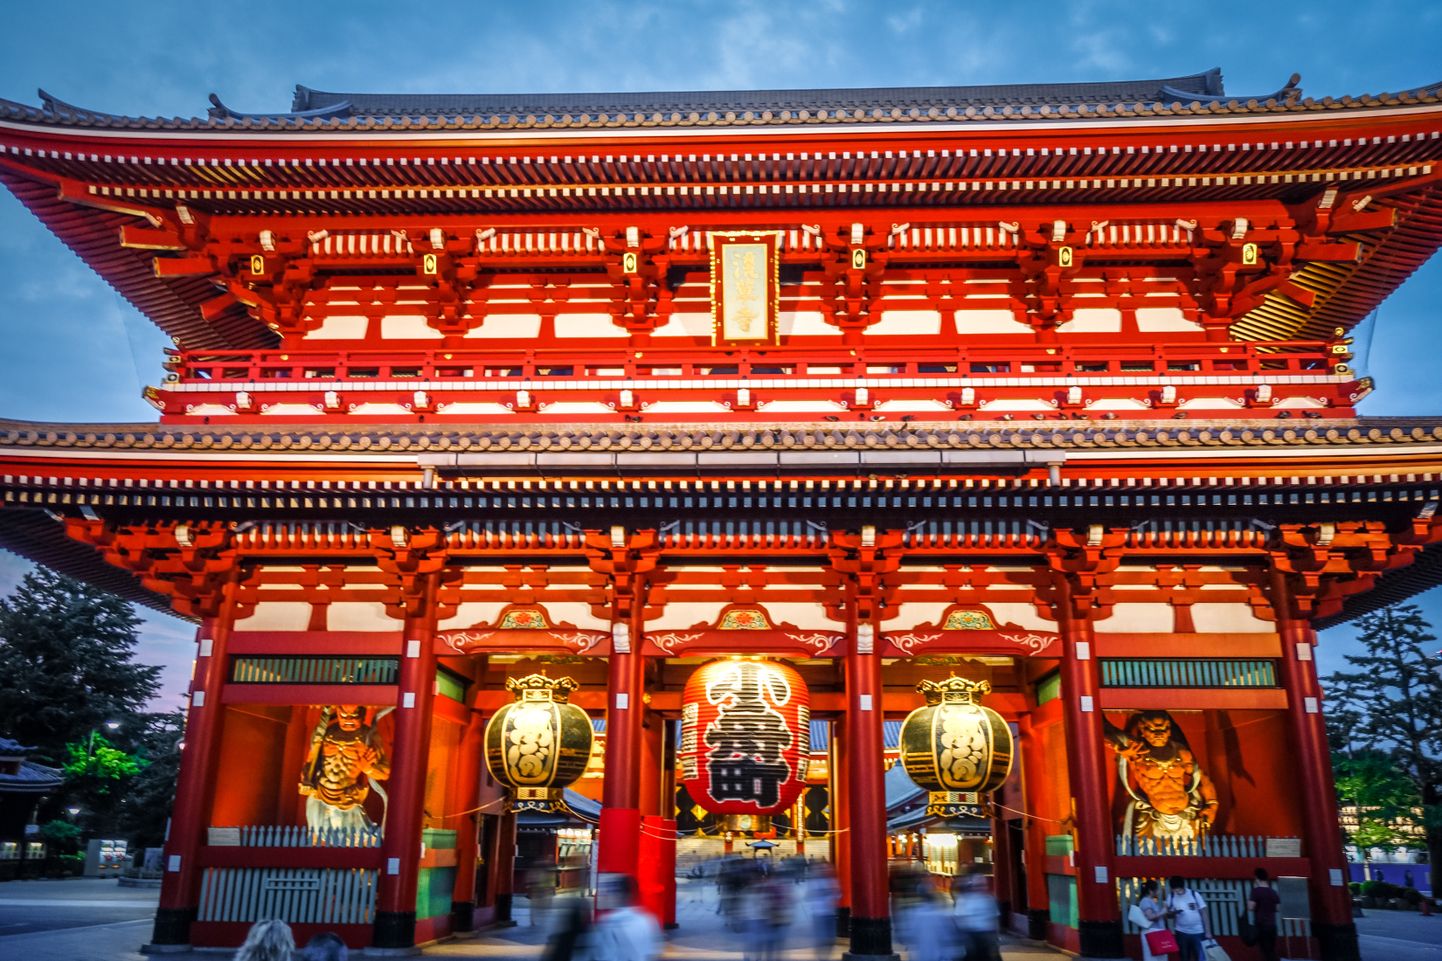 Senso-ji temple, Tokyo, Japan